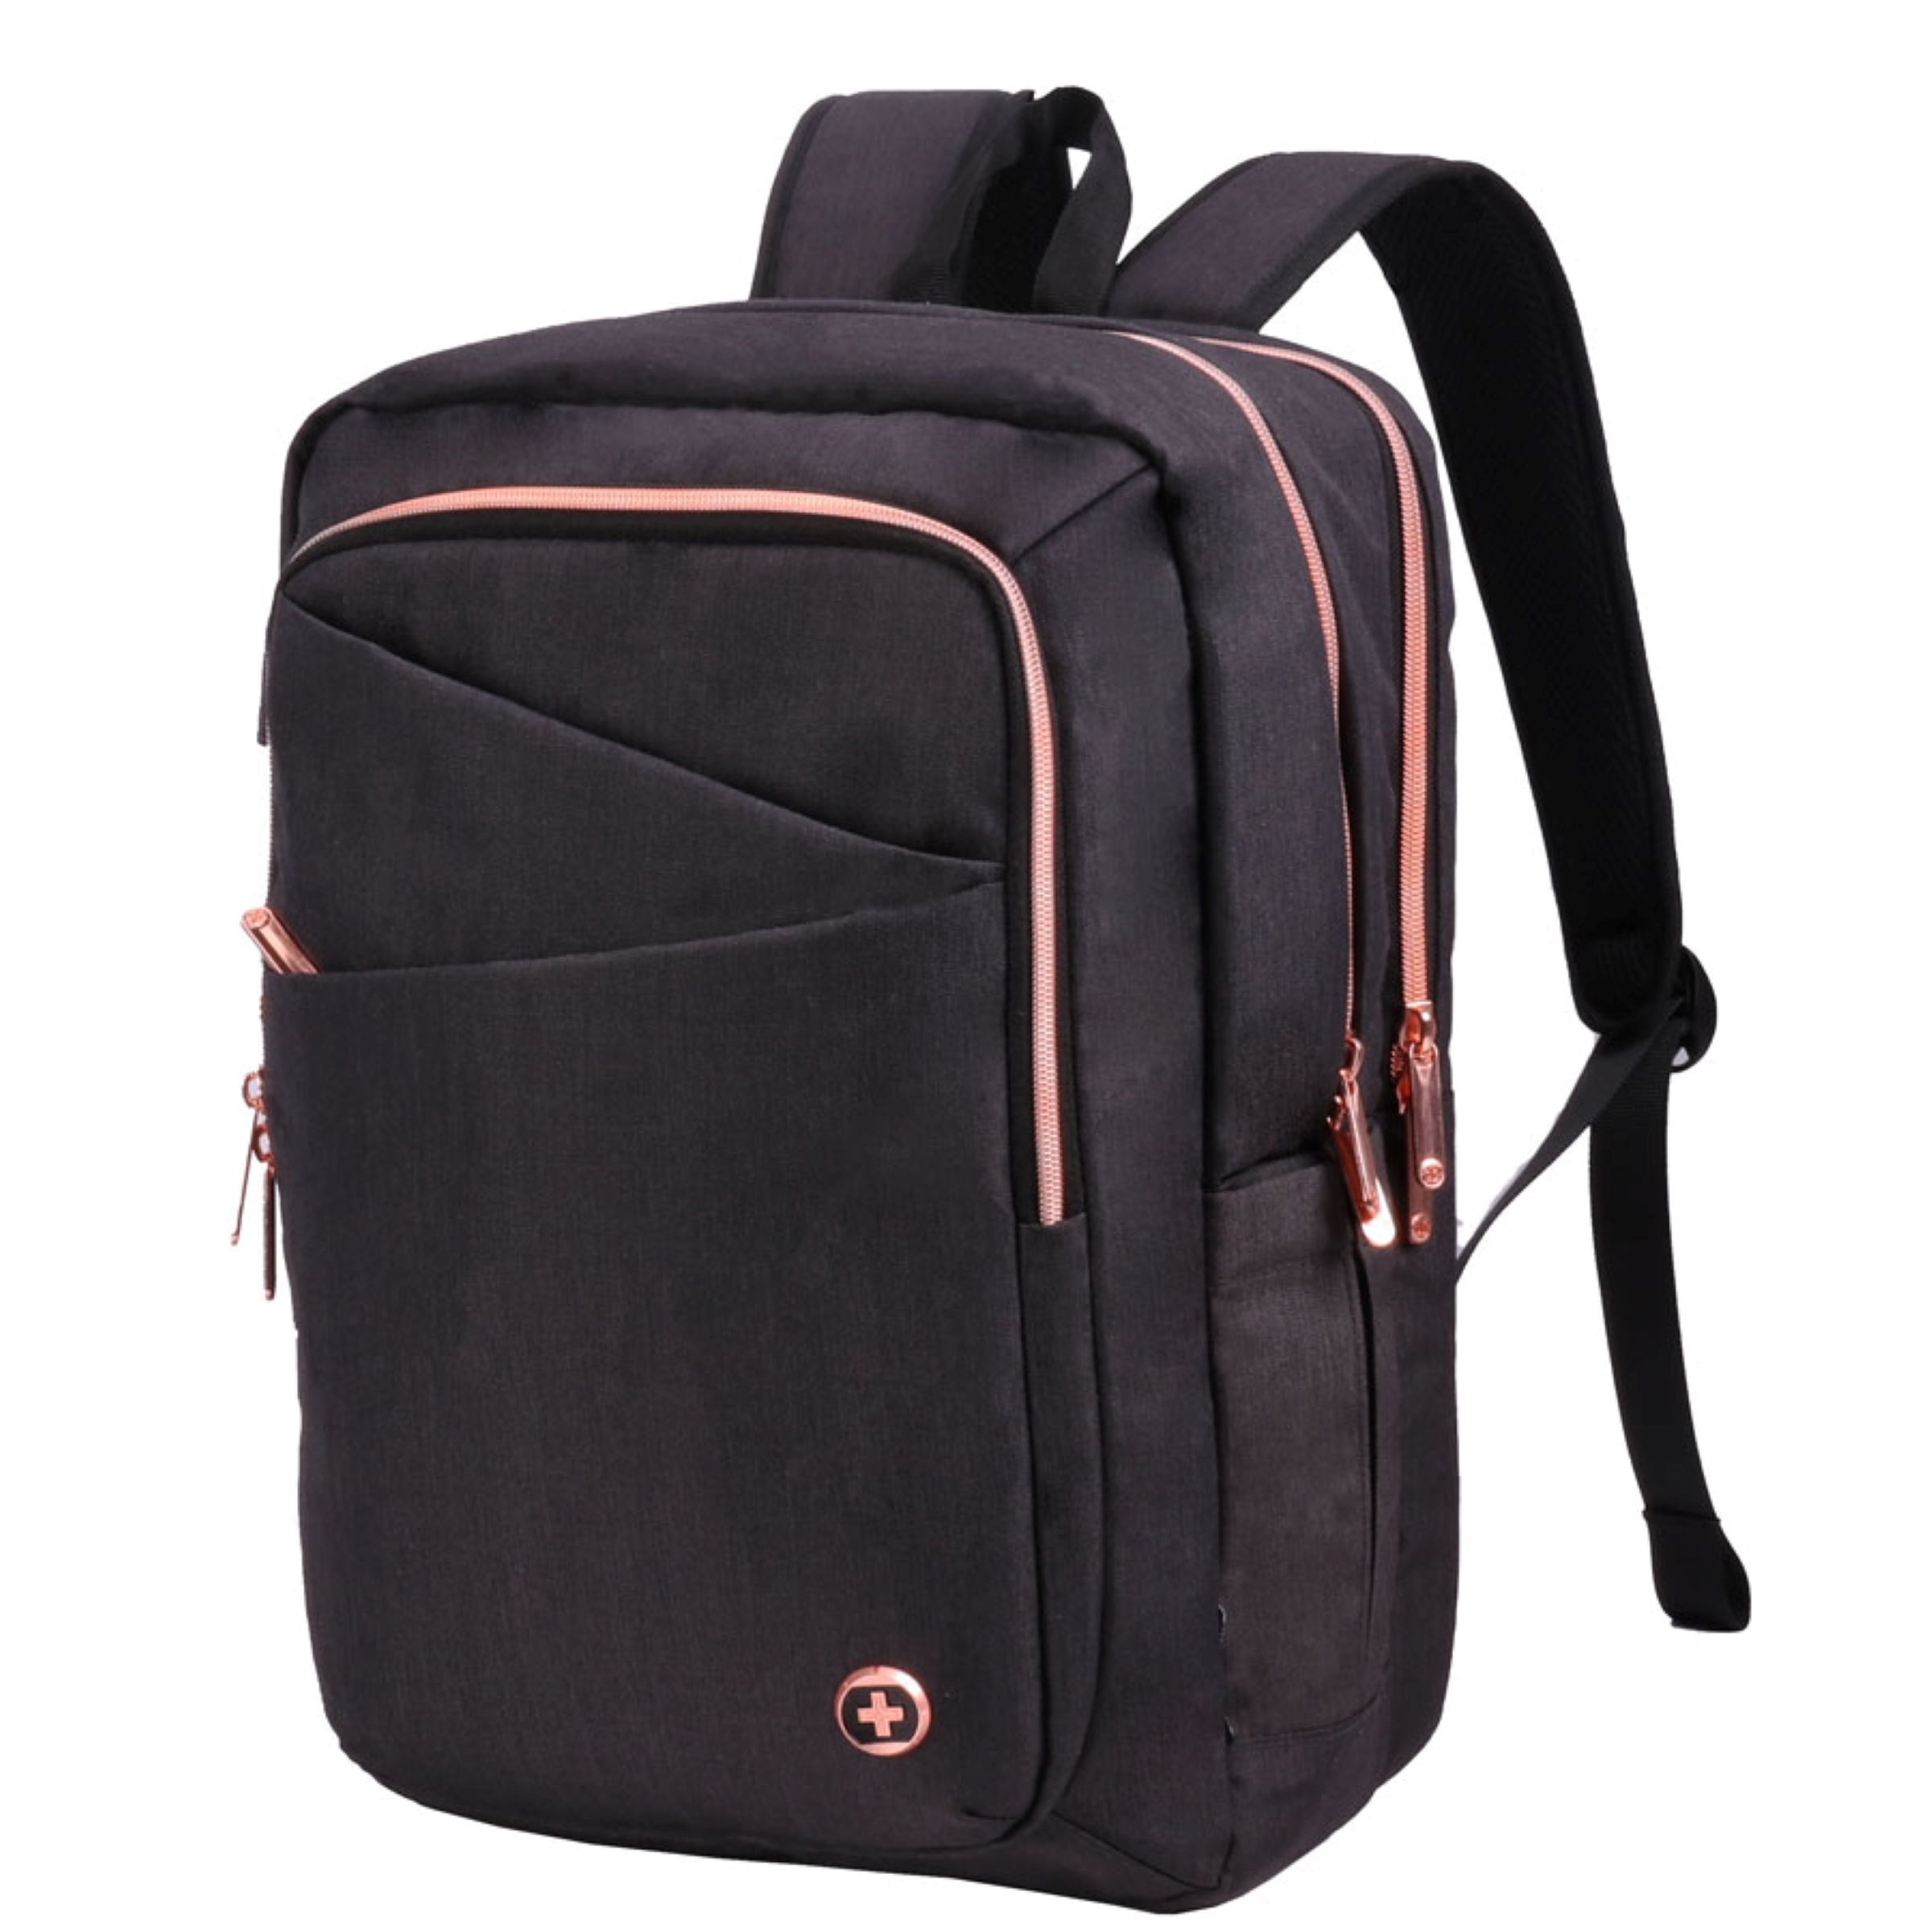 40% off / FS or pickup instore MSRP $99.99 today $59.99 Swissdigital Design - Katy Rose Backpack - Black and Rose Gold